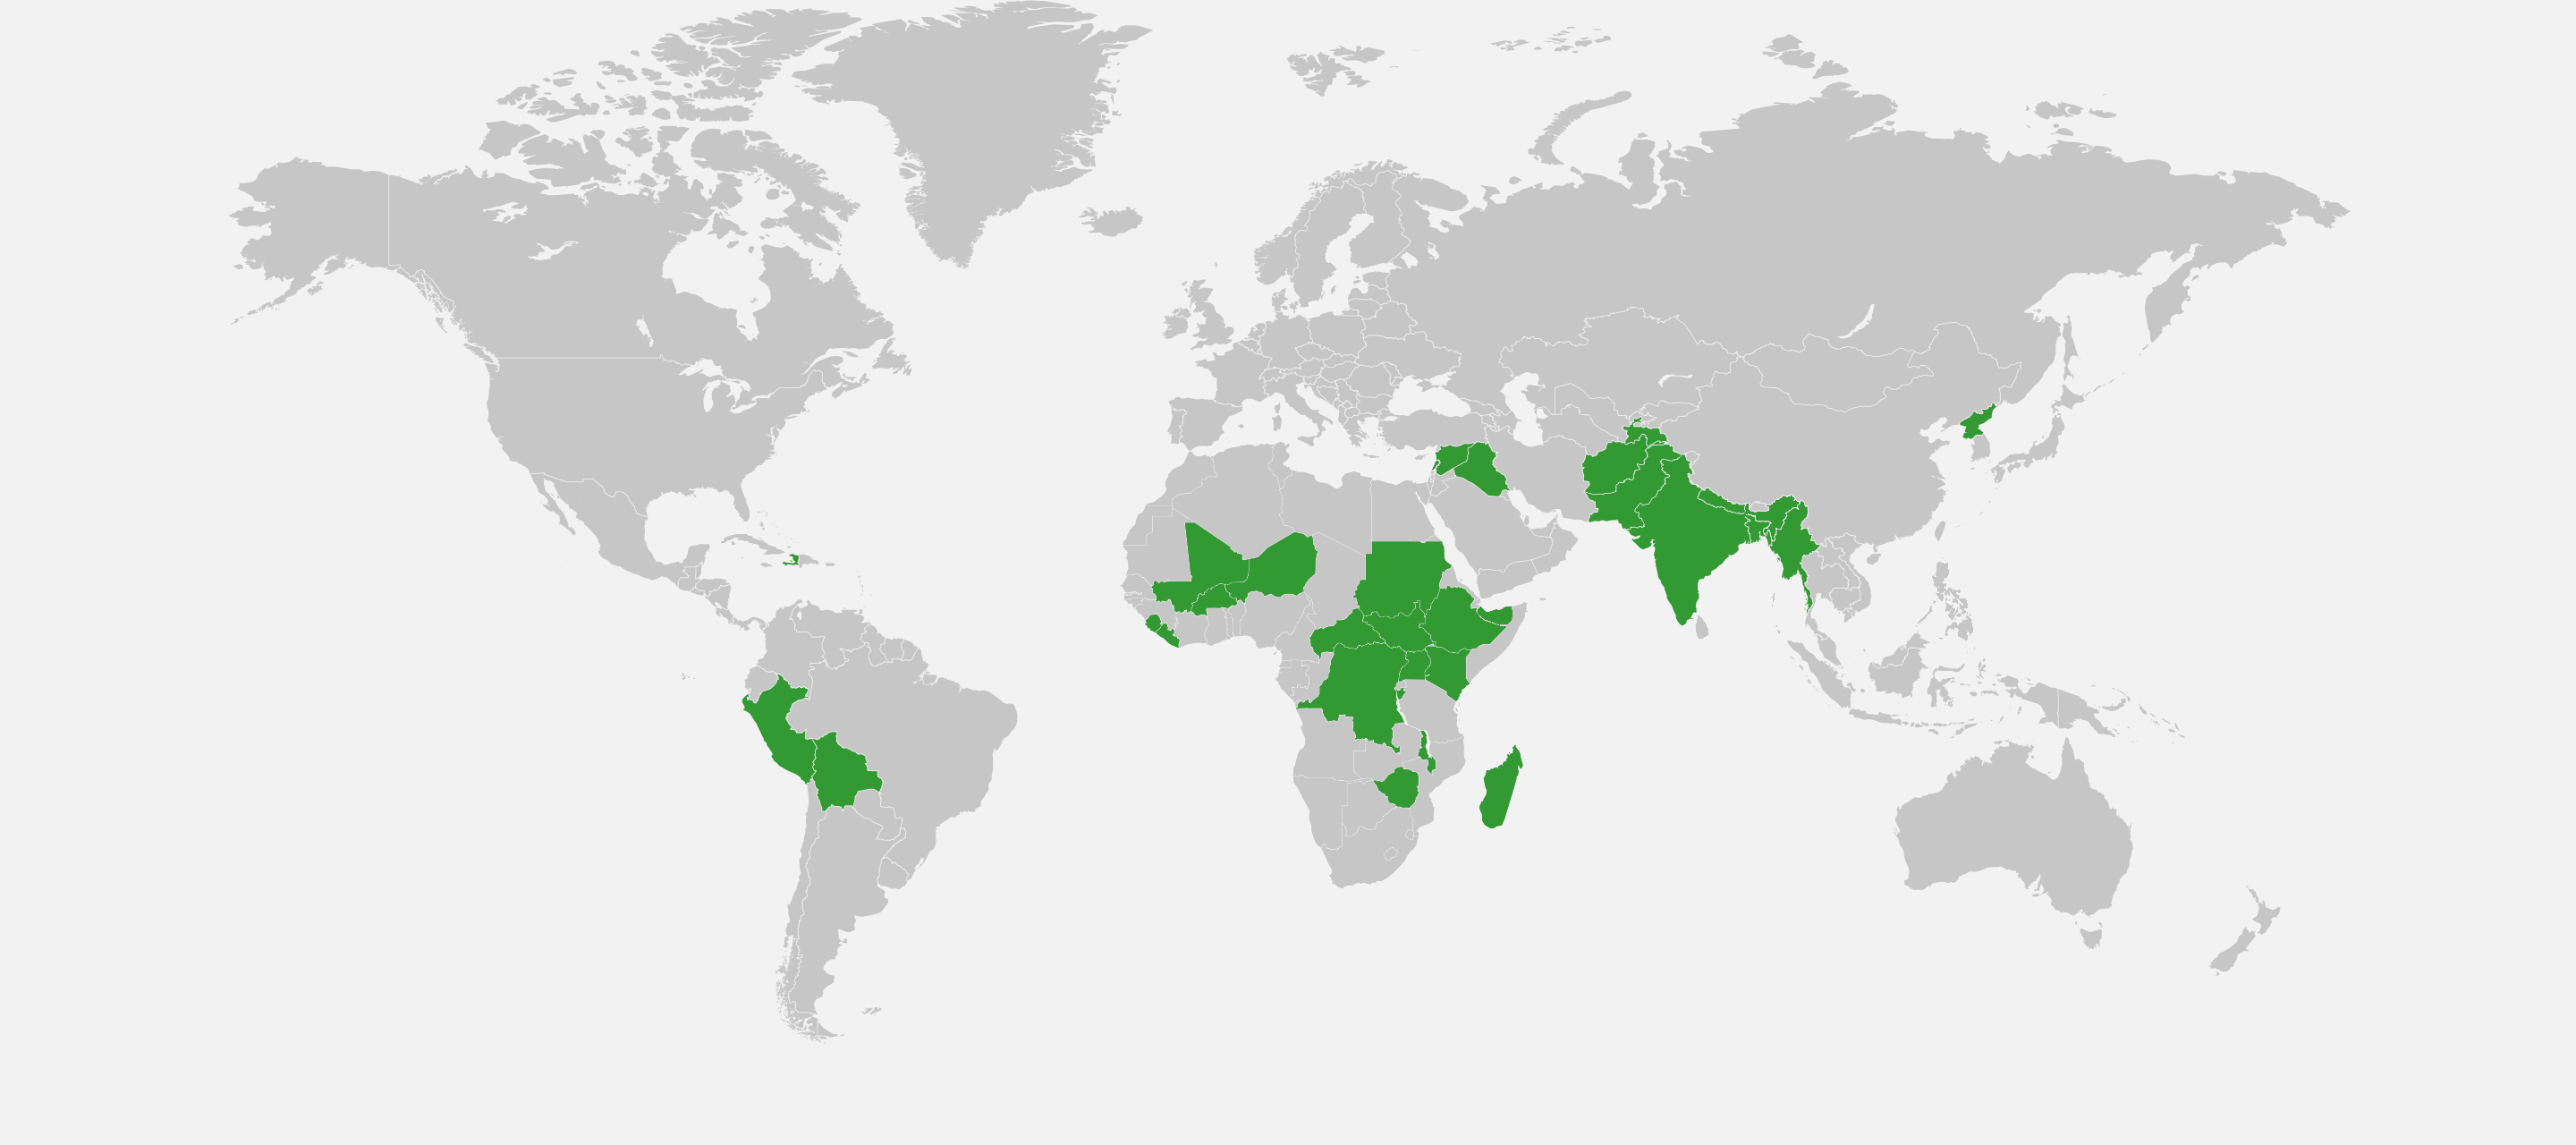 Grafik: Weltkarte mit grün markierten Ländern.